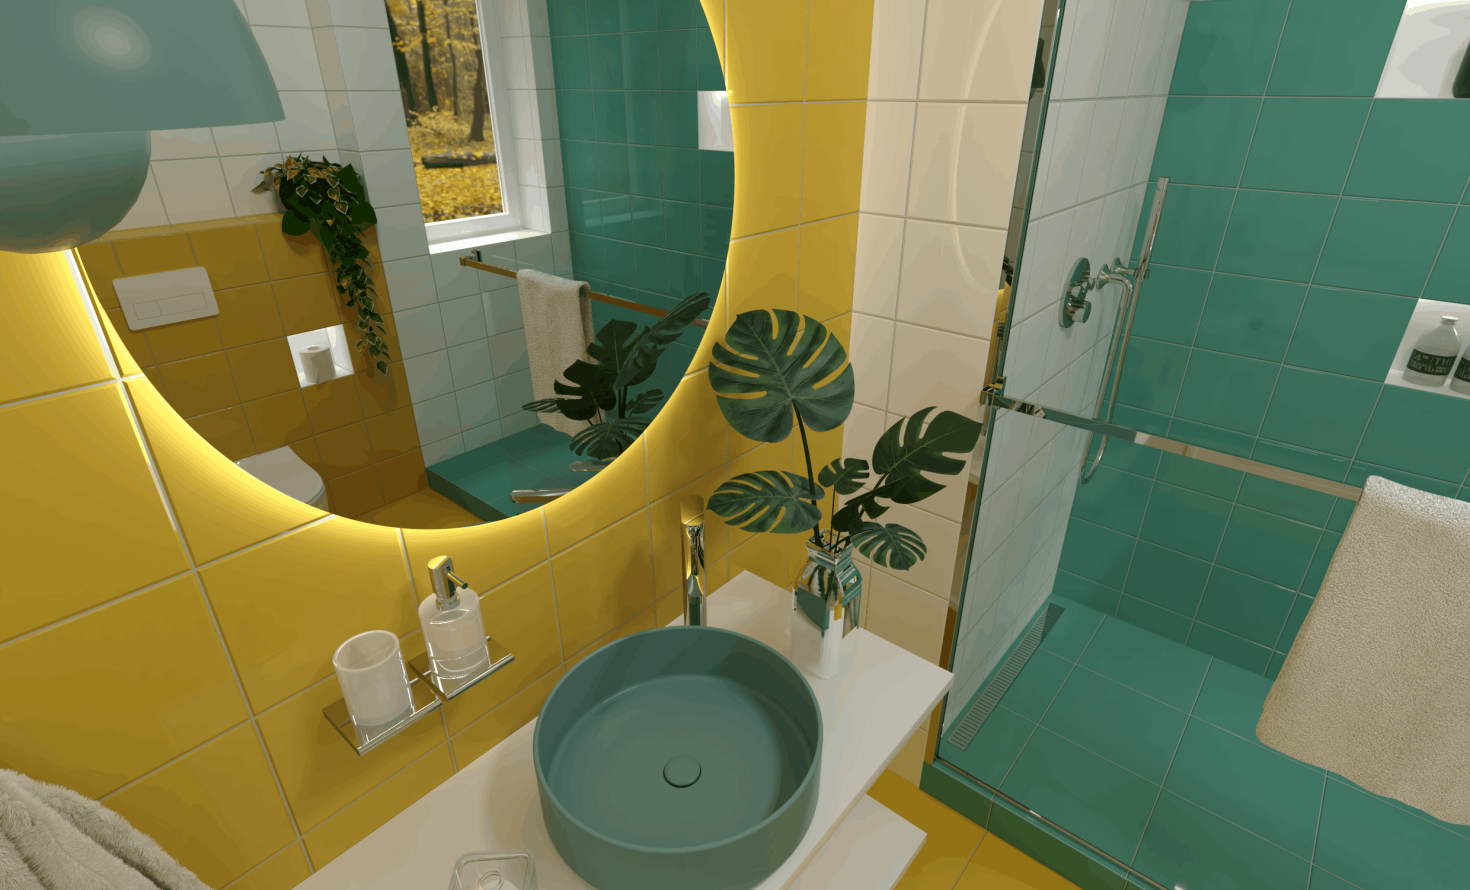 SIKO Barevná koupelna, žlutý, bílý, tyrkysový obklad, barevné modré umyvadlo na desku, kulaté zrcadlo s LED osvětlením